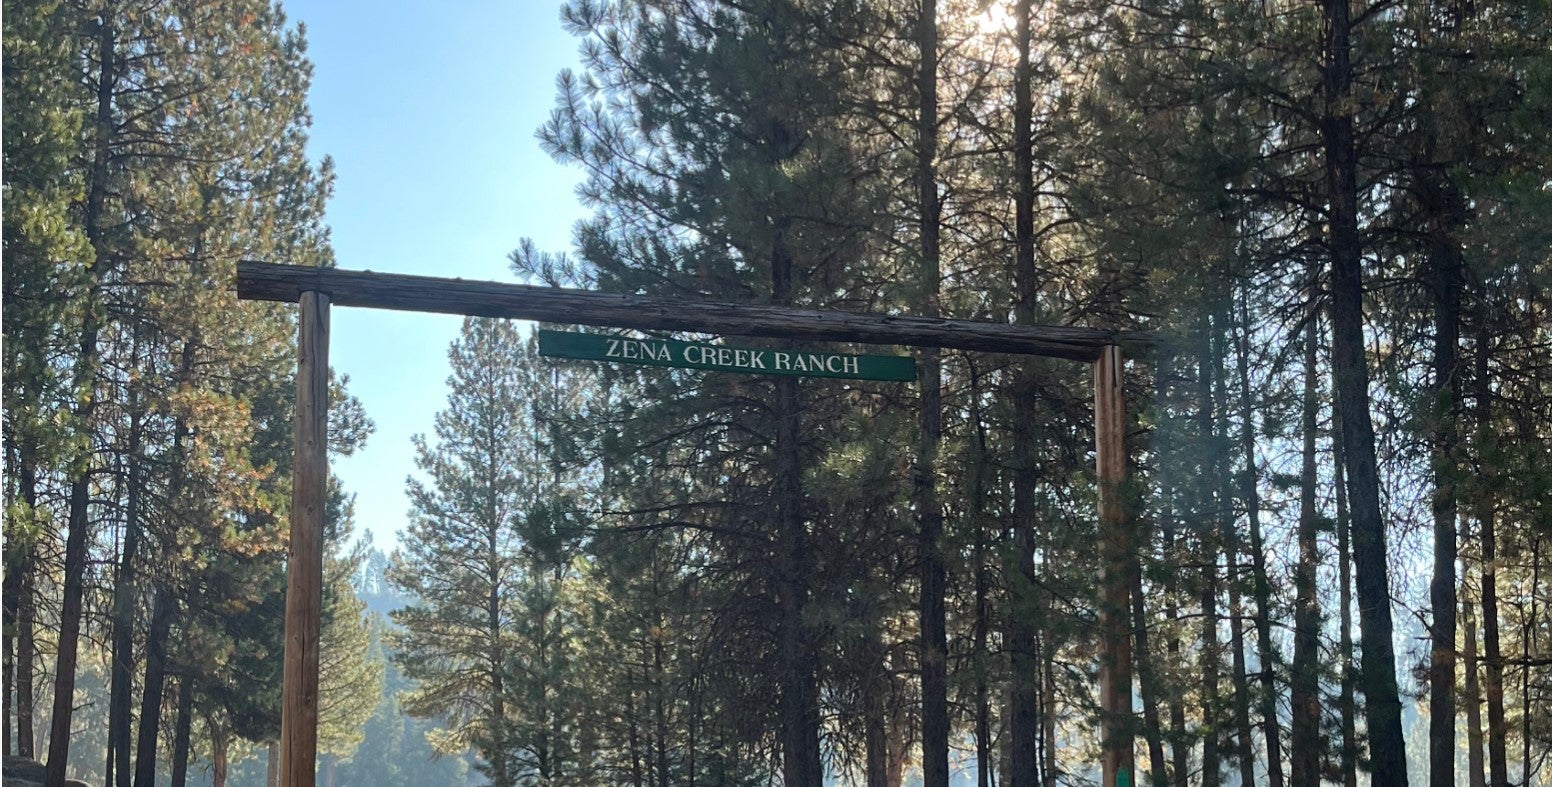 entrance to Zena Creek Ranch